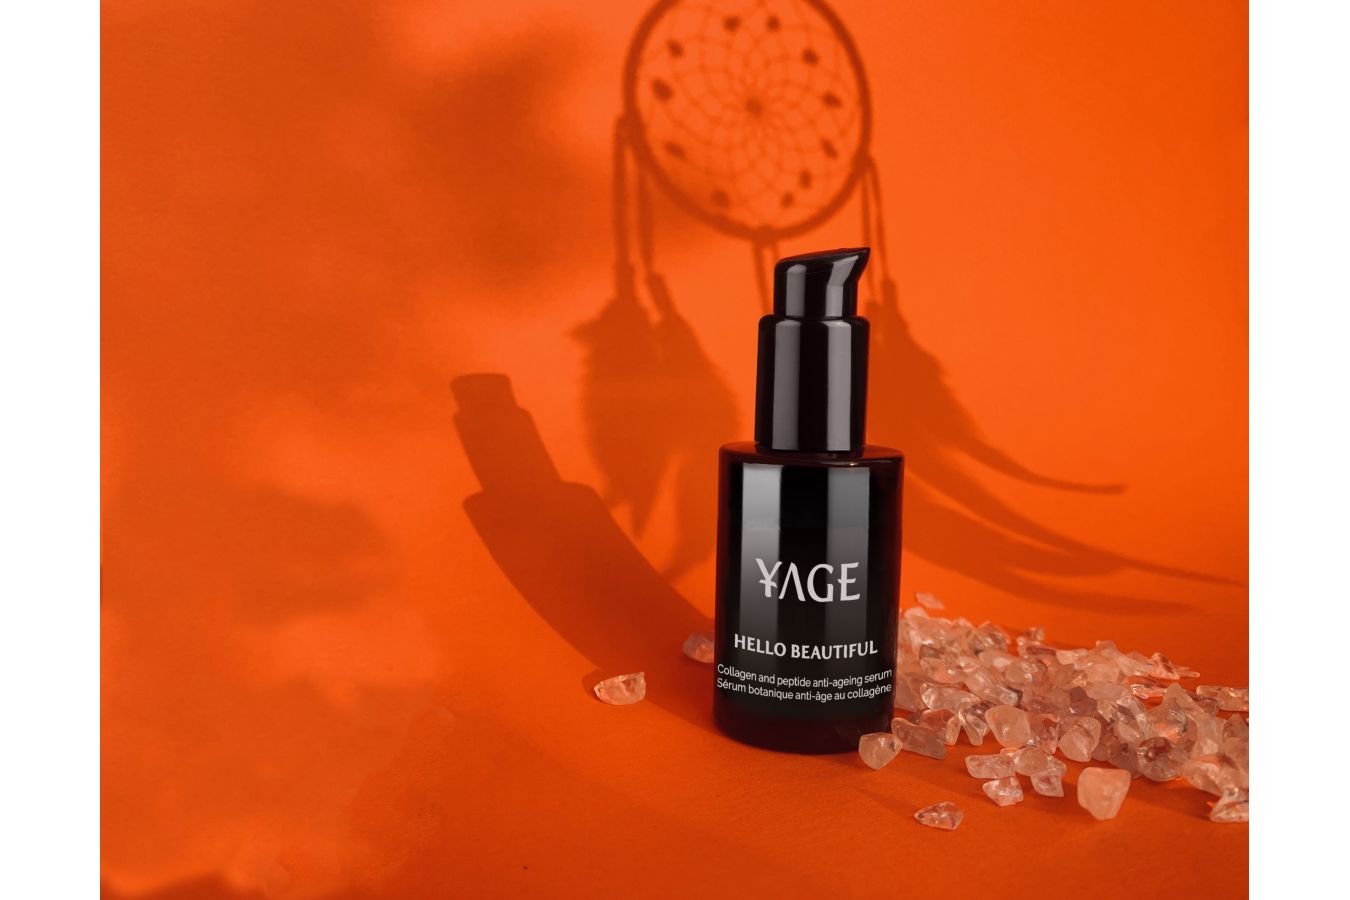 Luxusní přírodní kosmetika Yage Organics představuje novinky